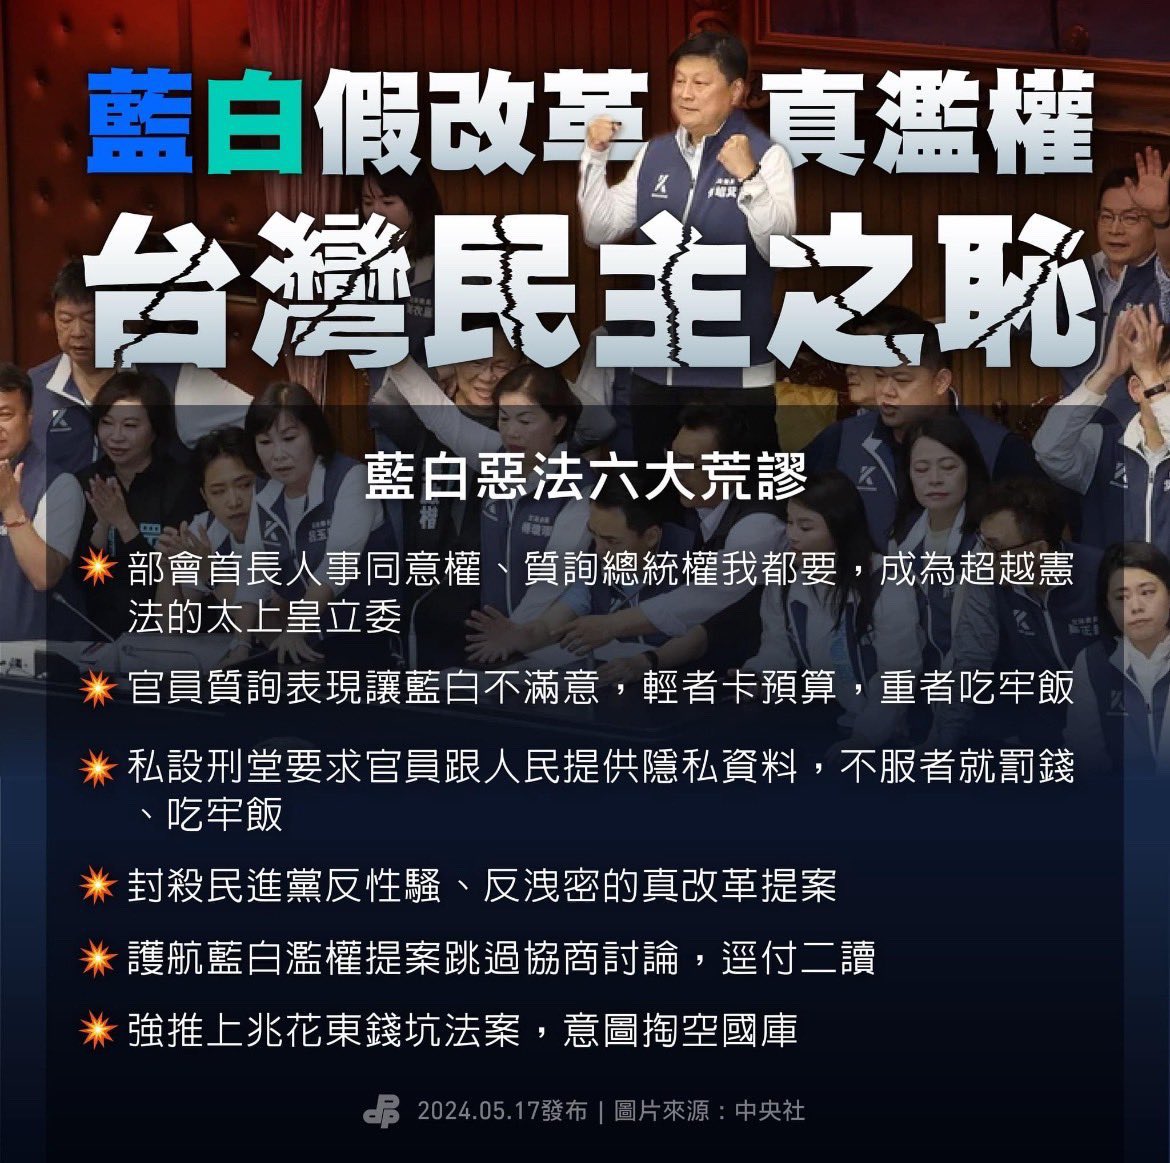 目前還在表決
6萬多人選出來的花蓮王
要強勢通過幾兆預算給花蓮
憑什麼？

願天佑台灣。